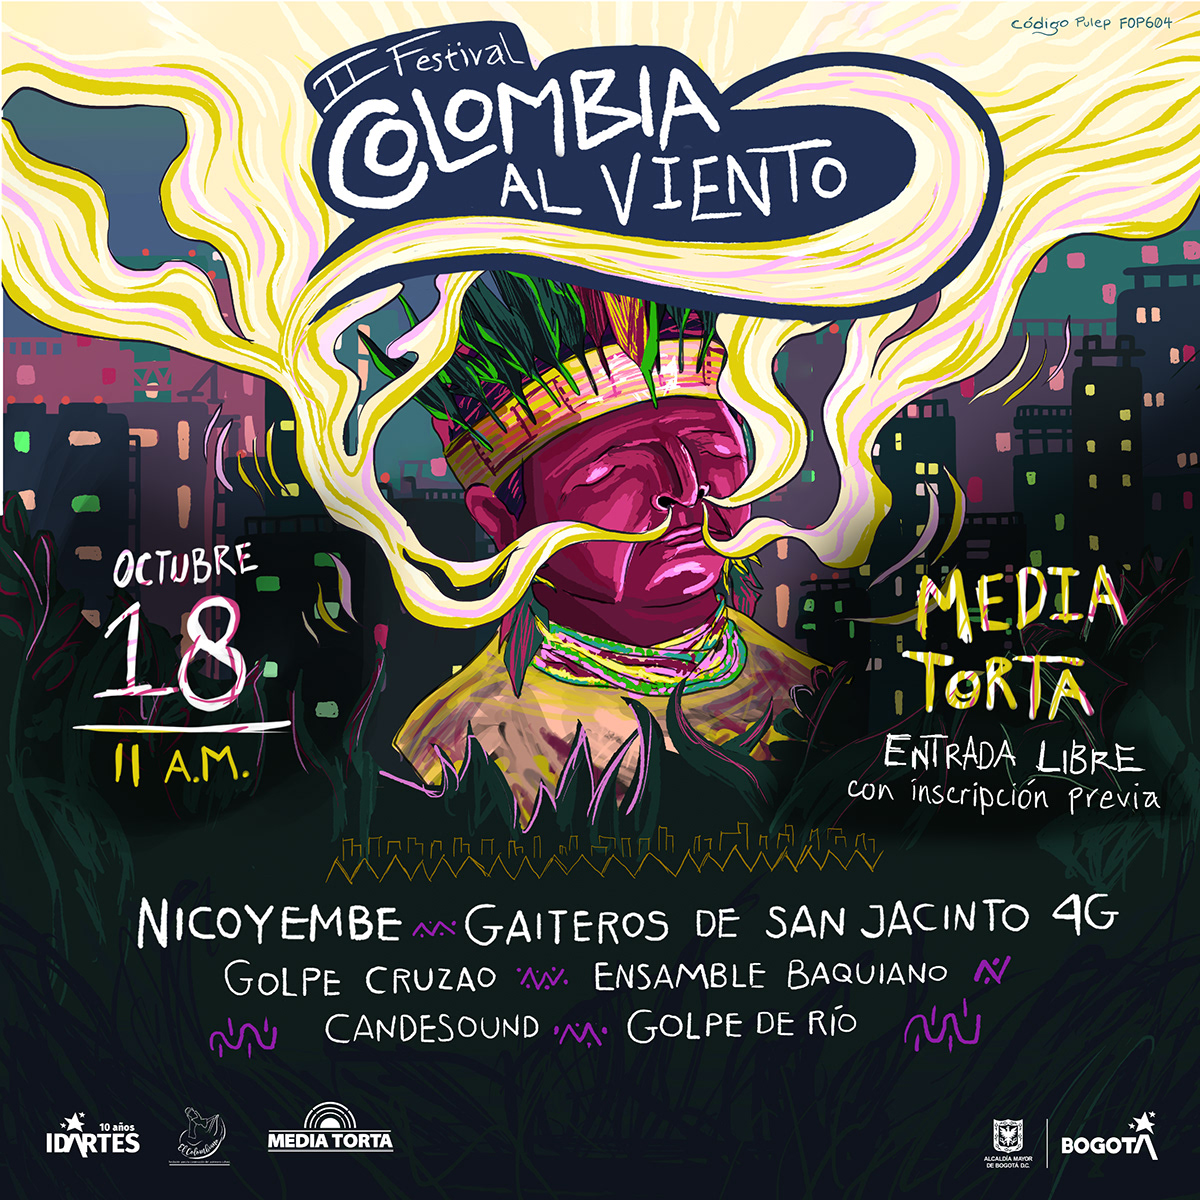 bogota cartel colombia Festival de música festival independiente gaita idartes iedntidad ilustracion musica colombiana